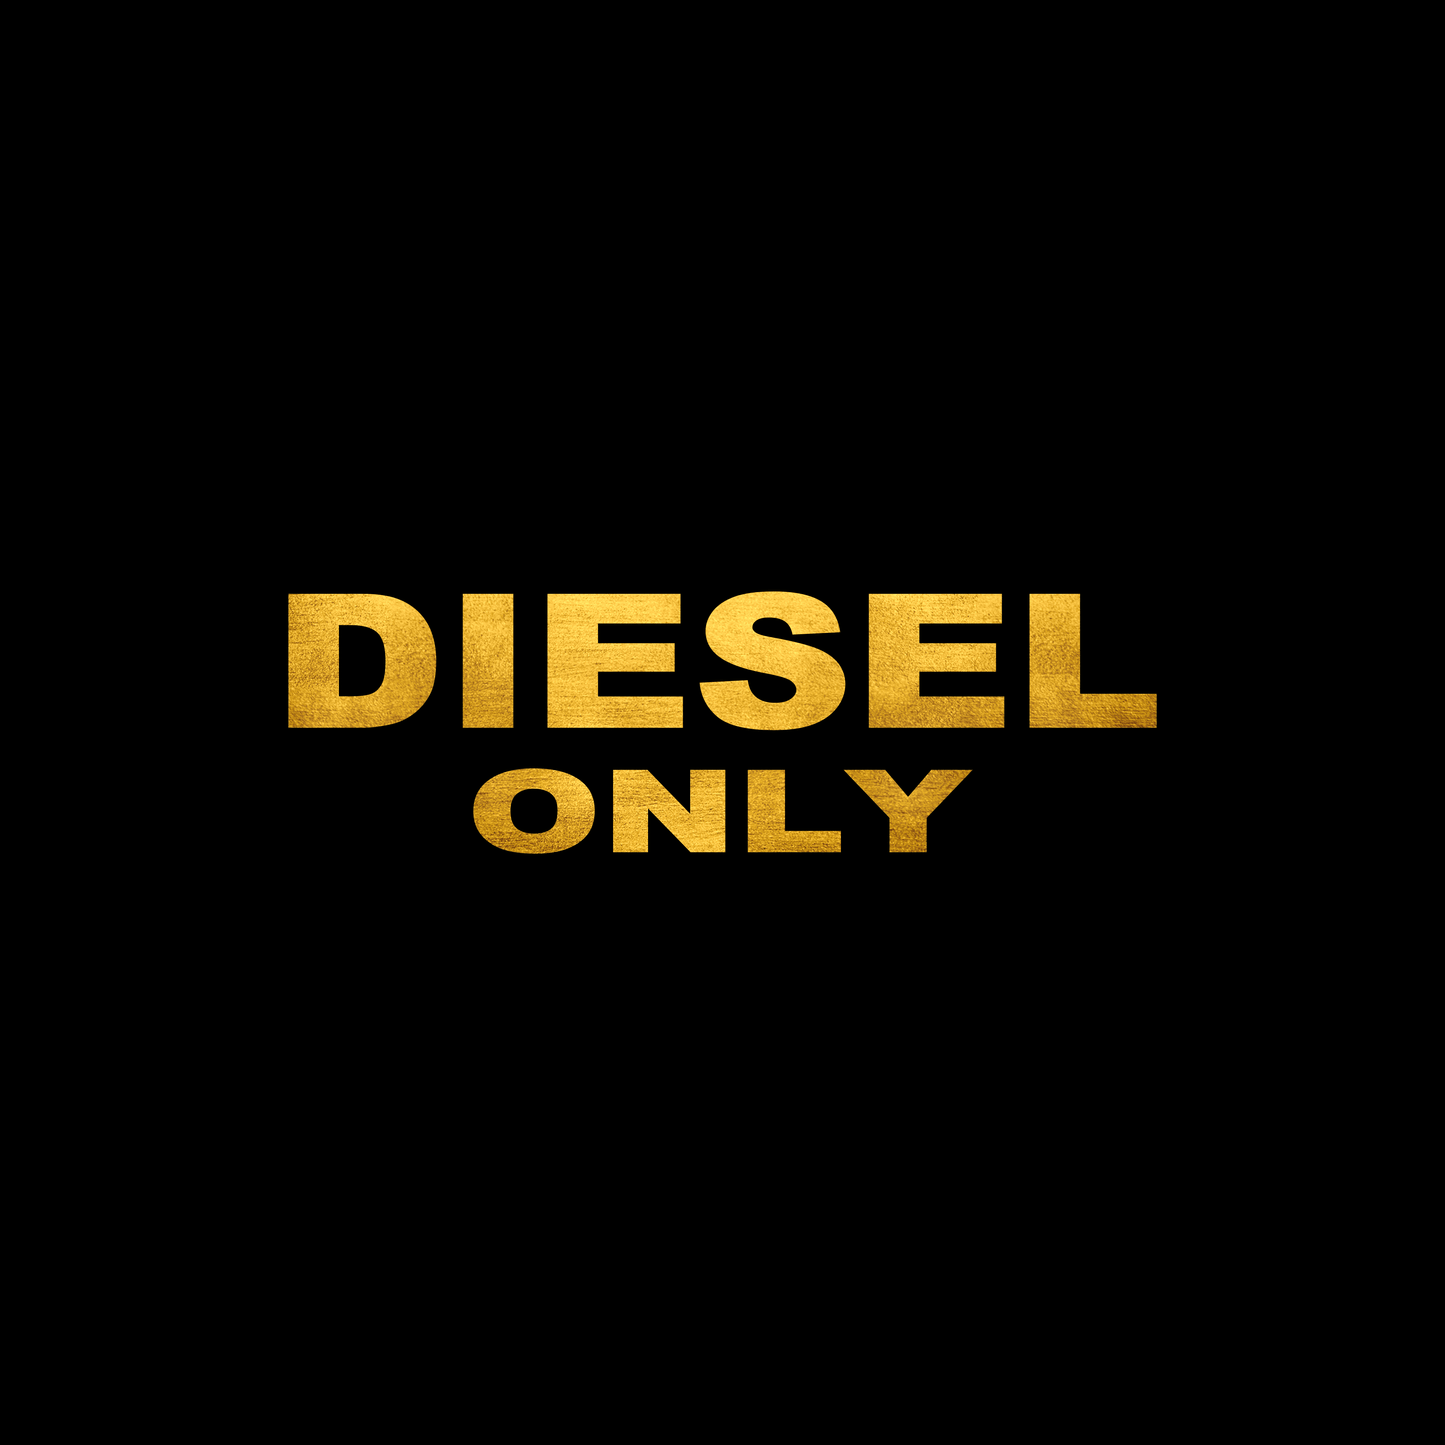 Diesel only sticker decal